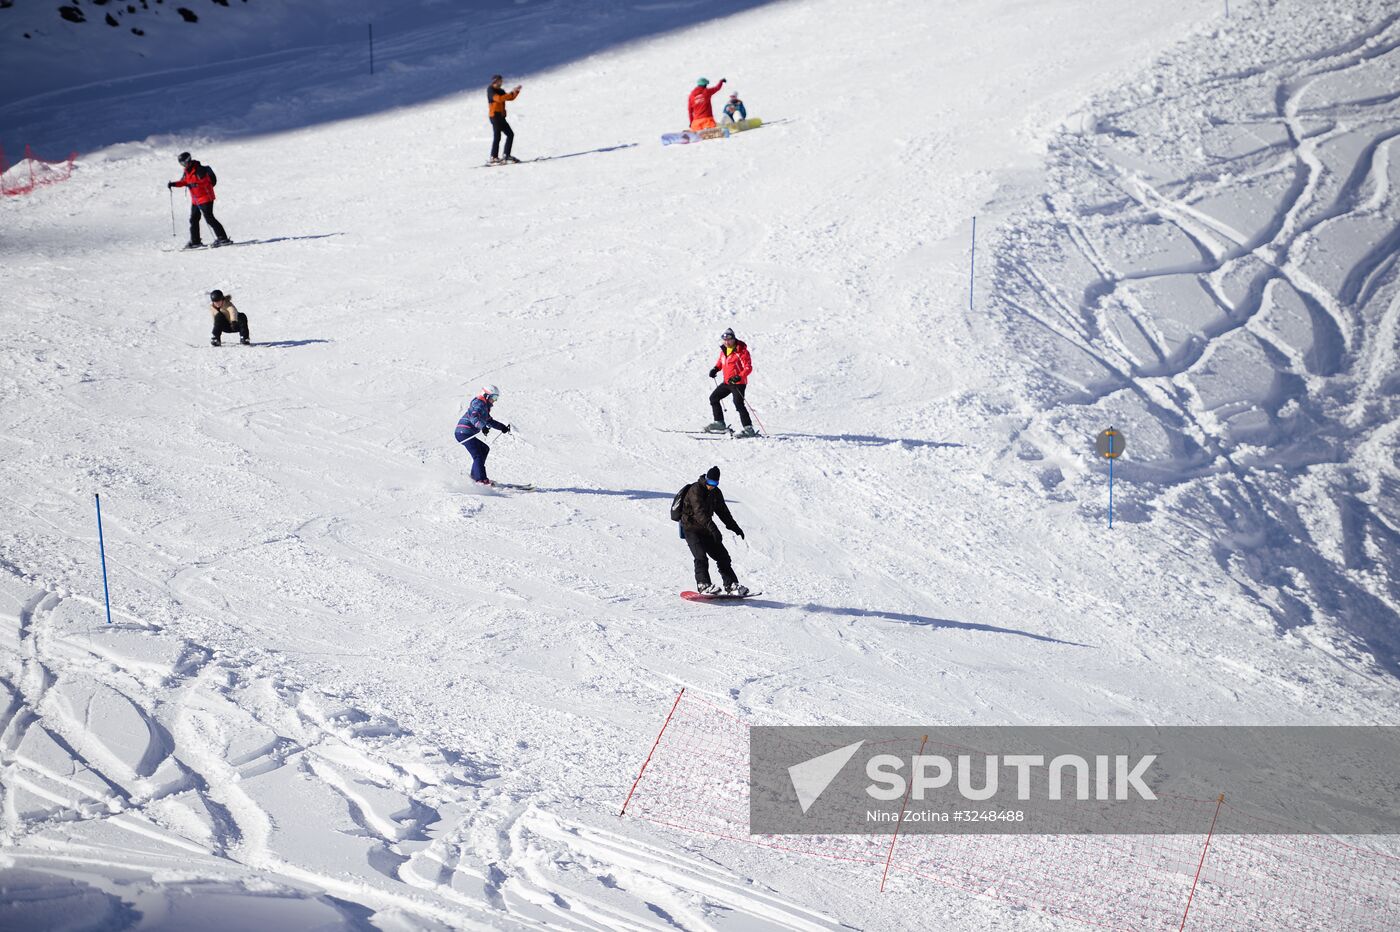 Ski season opens at Gorki Gorod resort in Sochi